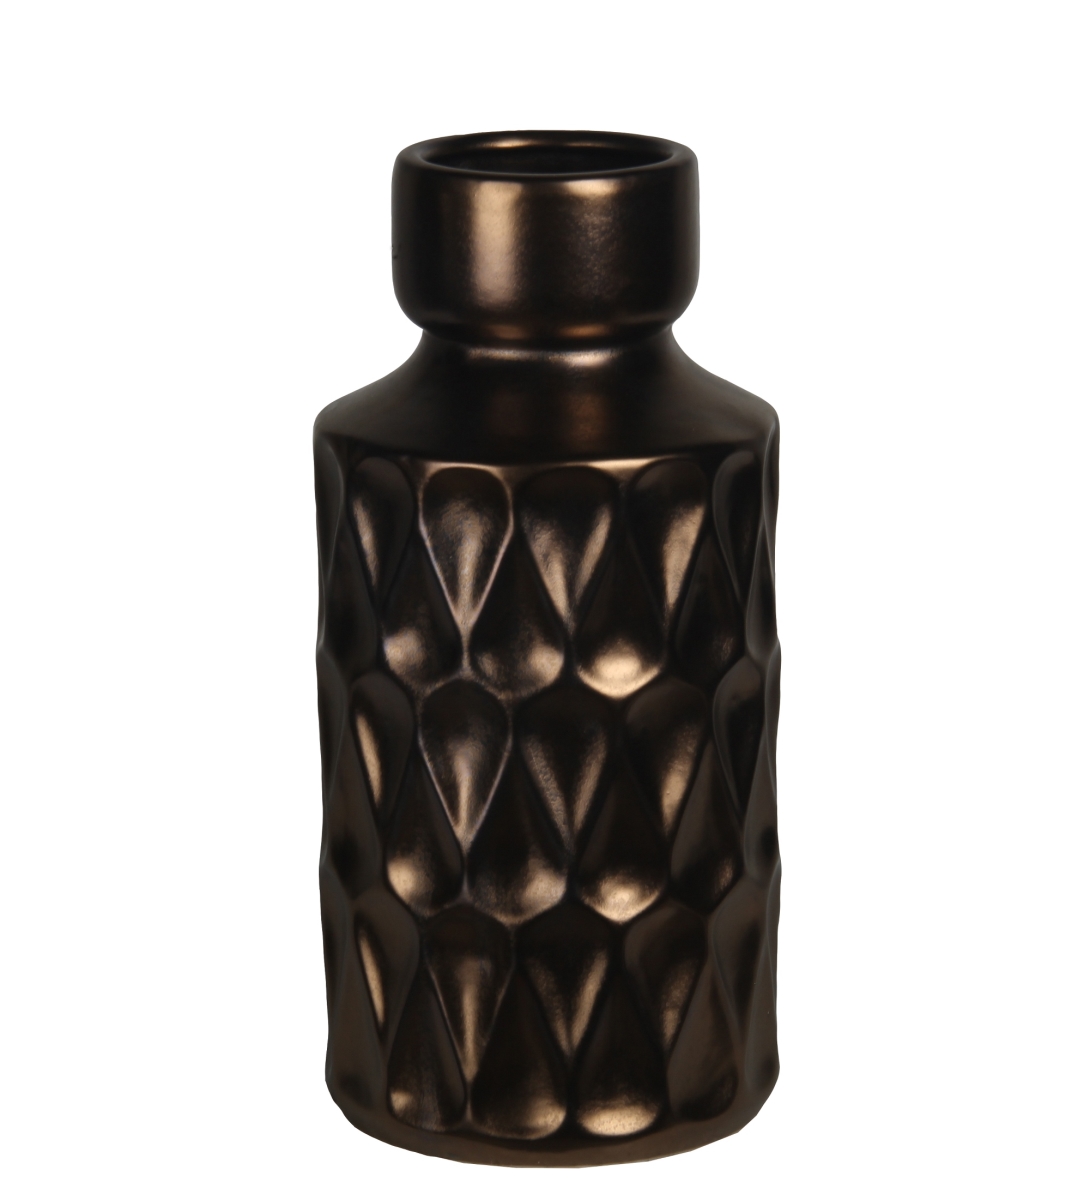 78199 6 X 6 X 12 In. Contemporary Ribbed Copper & Ceramic Vase, Small